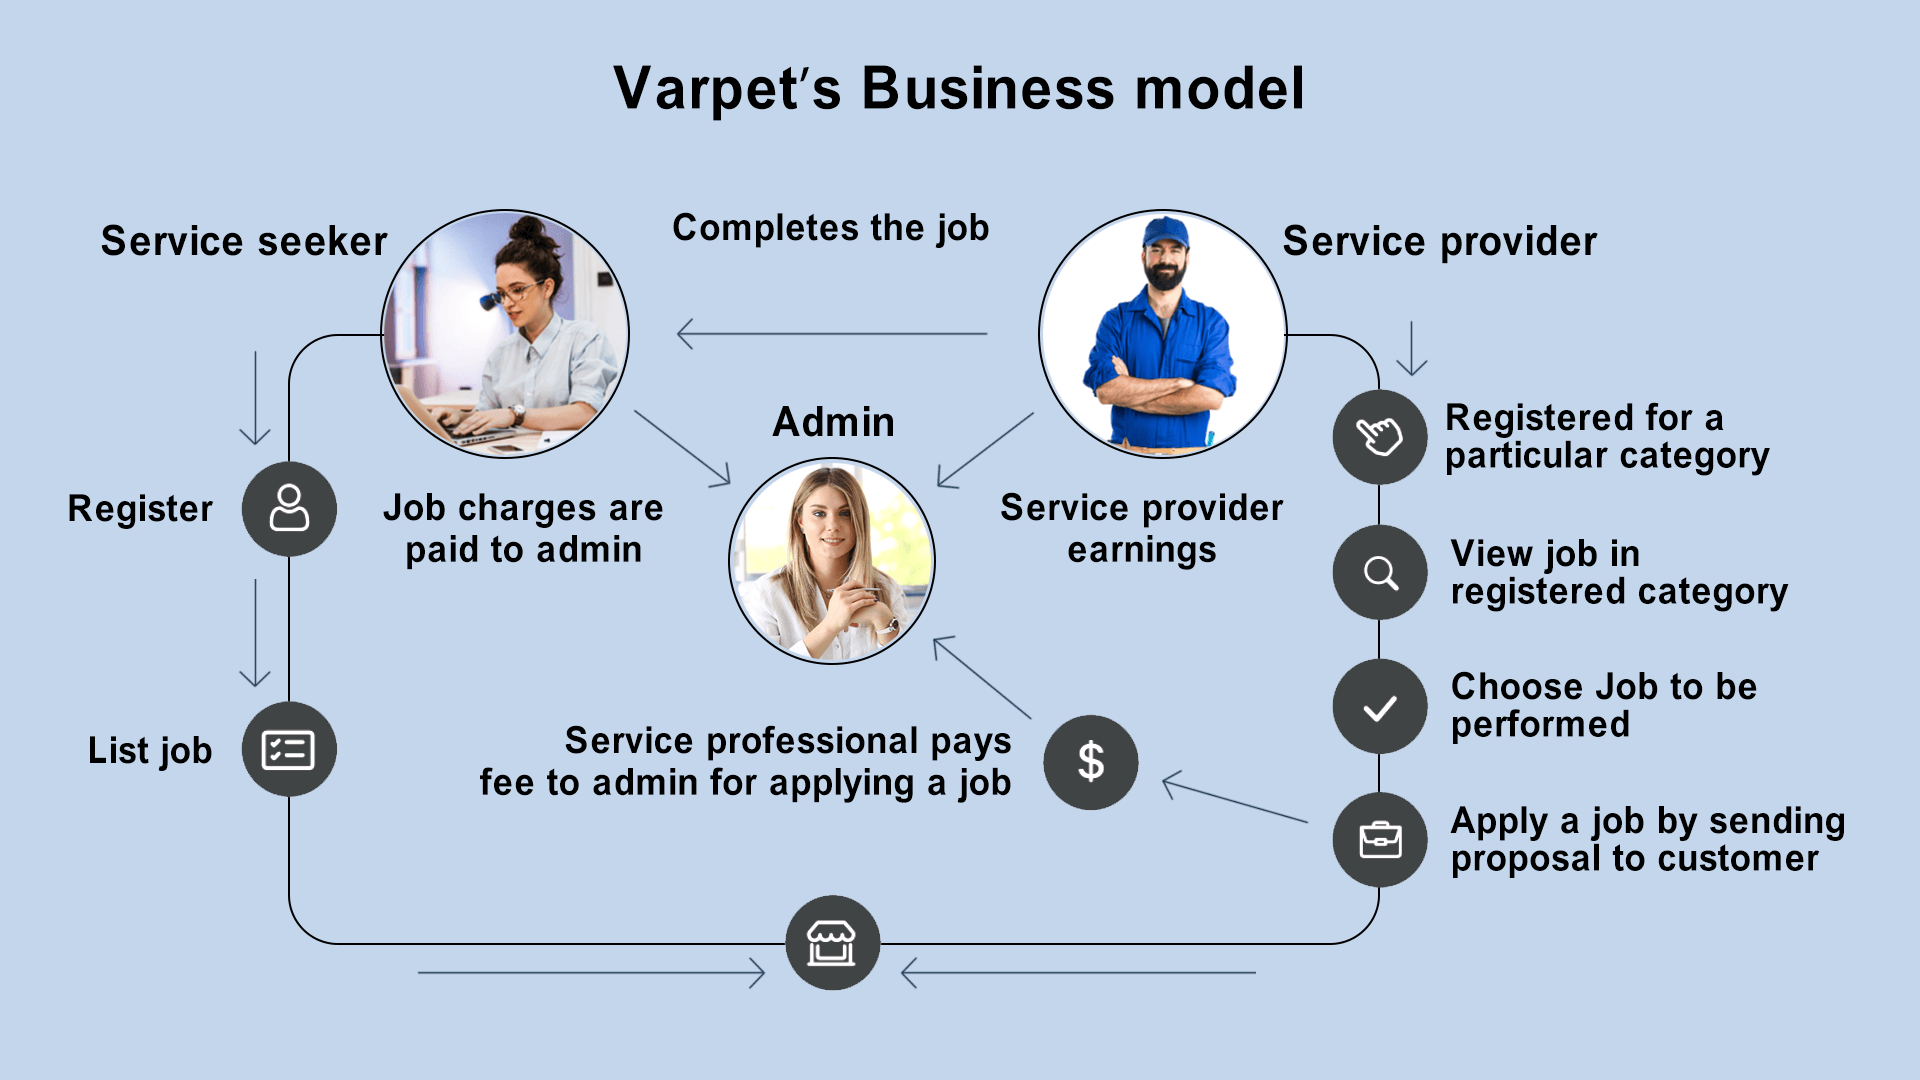 Varpet's Business Model